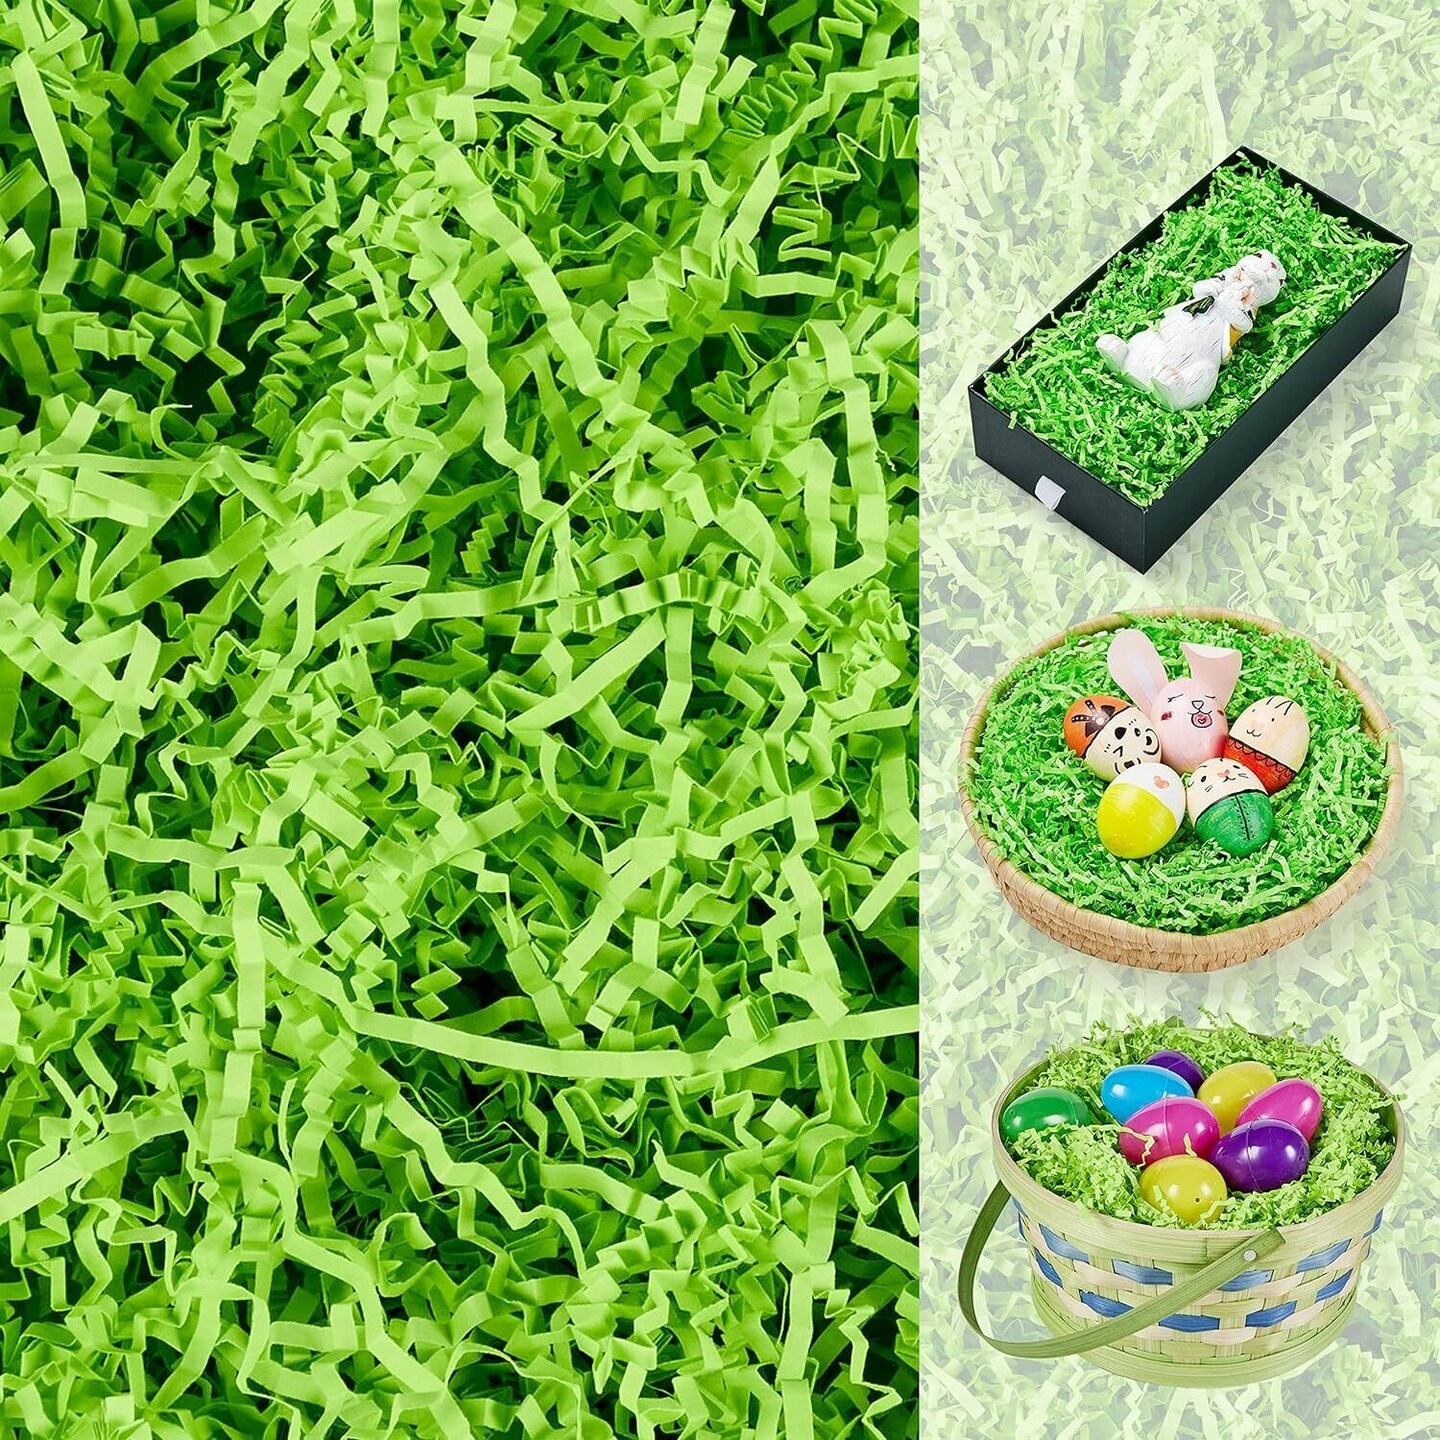 12 oz Easter Grass Paper Shred Light Green for Easter Basket Filling Easter Gift